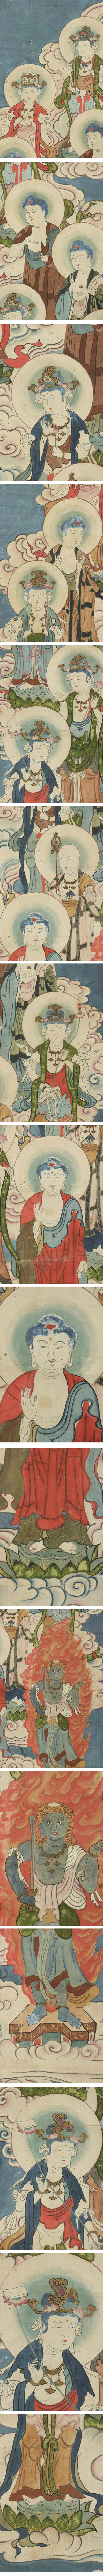 【限定セール】◆江戸期◆十三仏◆仏画◆仏教美術◆肉筆◆紙本◆掛軸◆m270 人物、菩薩